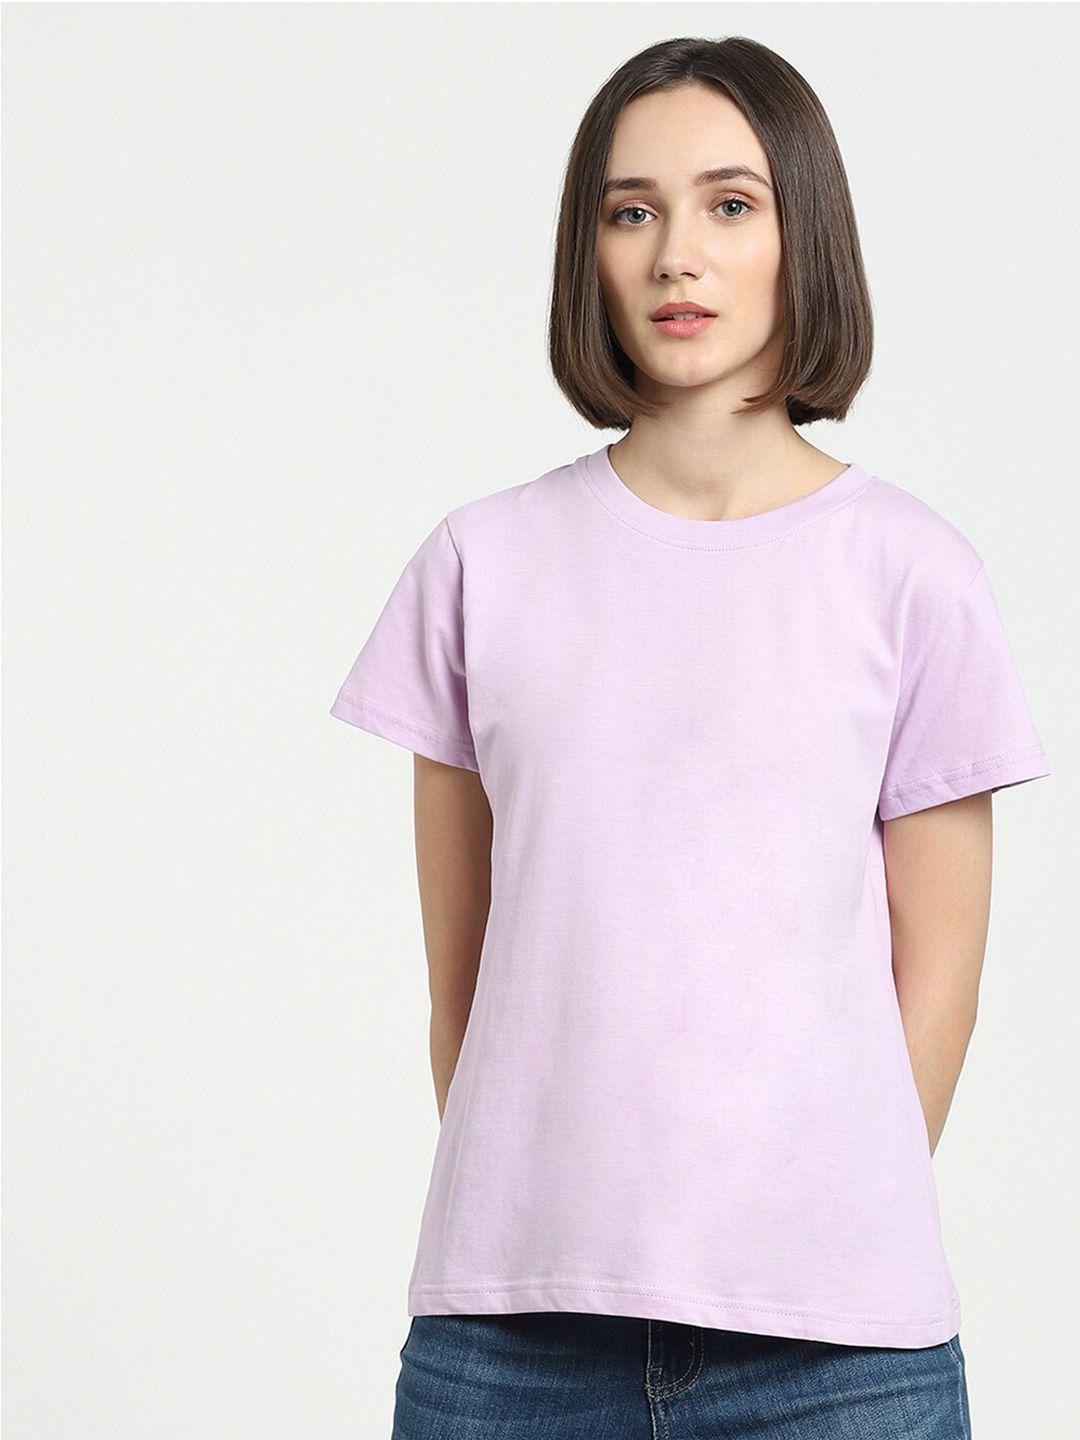 bewakoof-women-purple-t-shirt